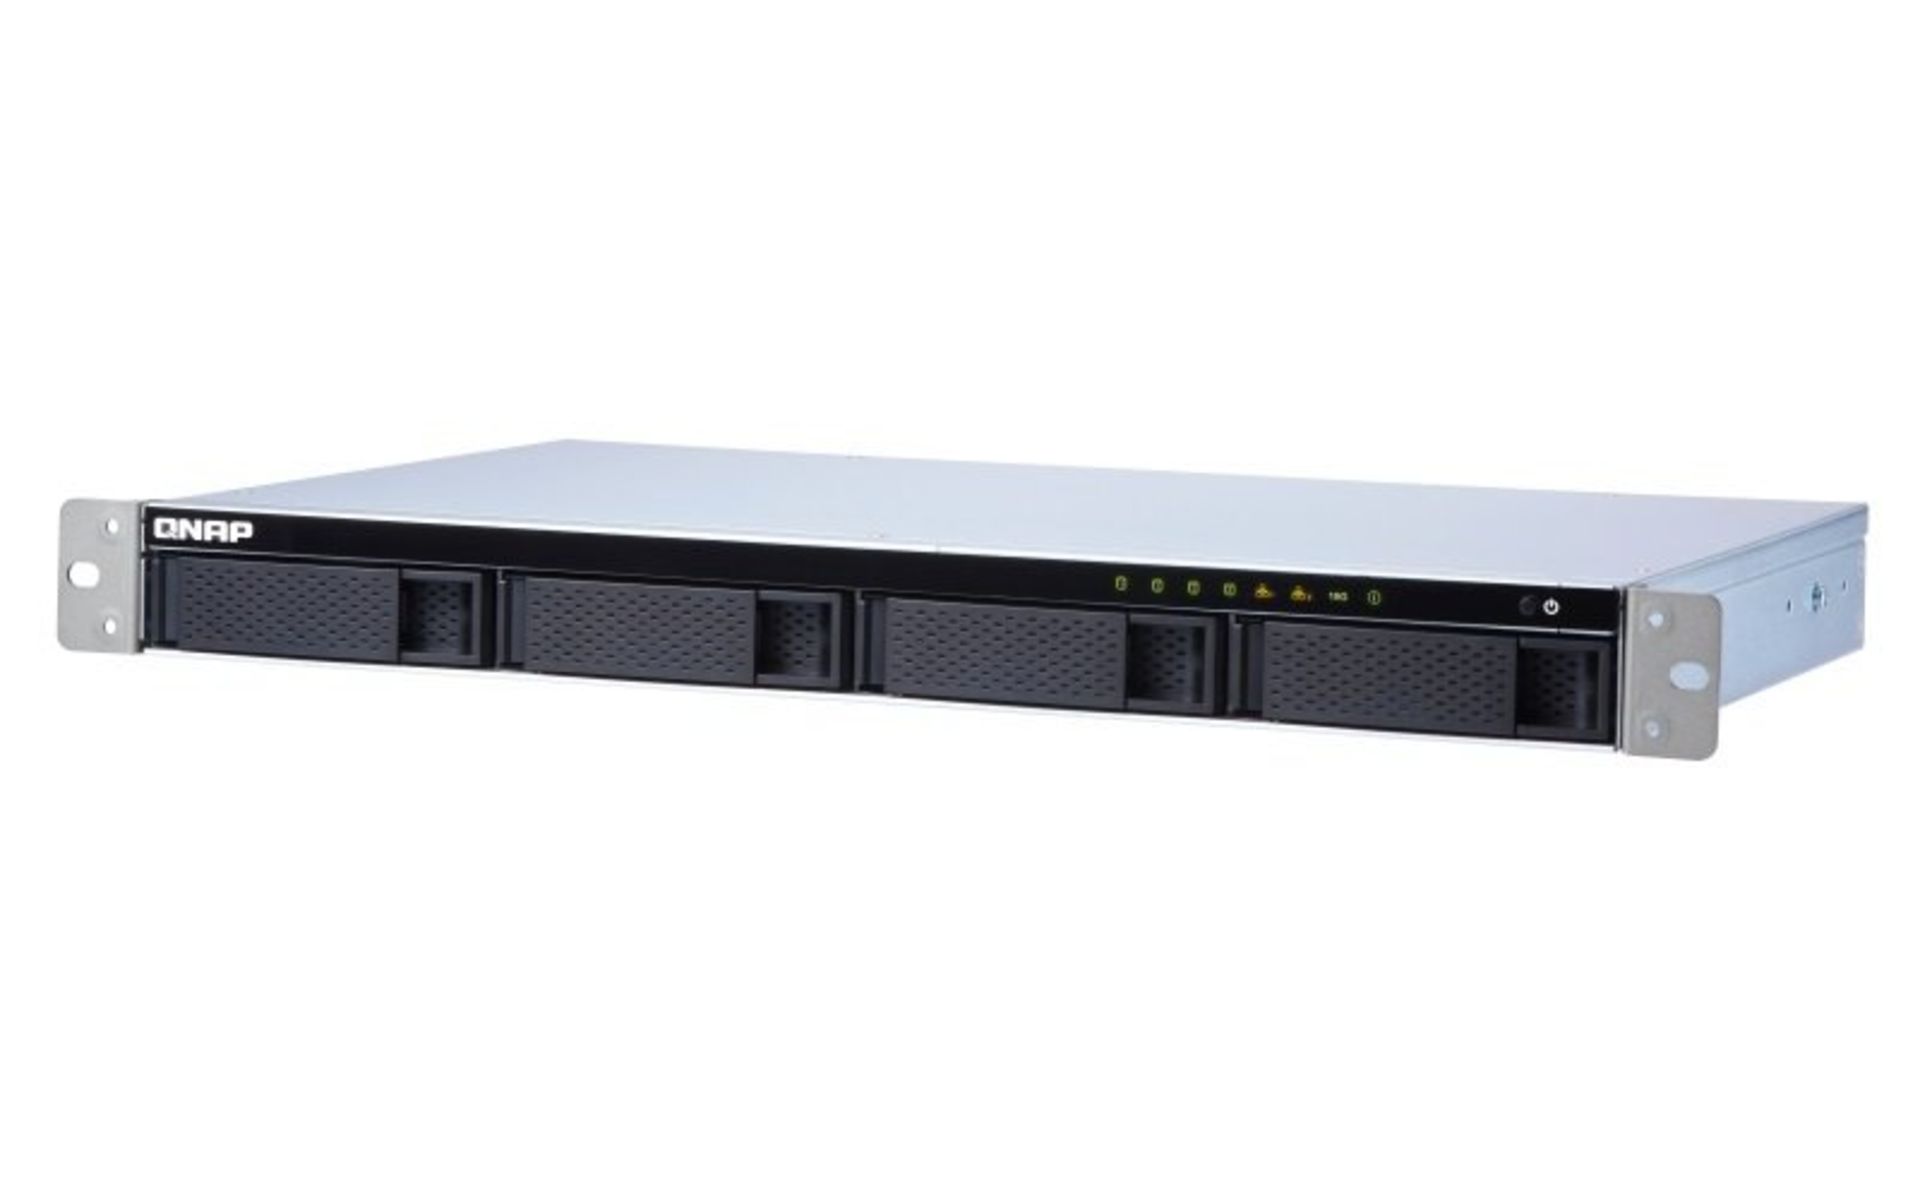 NEW & BOXED QNAP TS-431XeU-2G 4 Bay Rack NAS Enclosure with 2GB RAM. RRP £710.72. The high- - Image 2 of 2